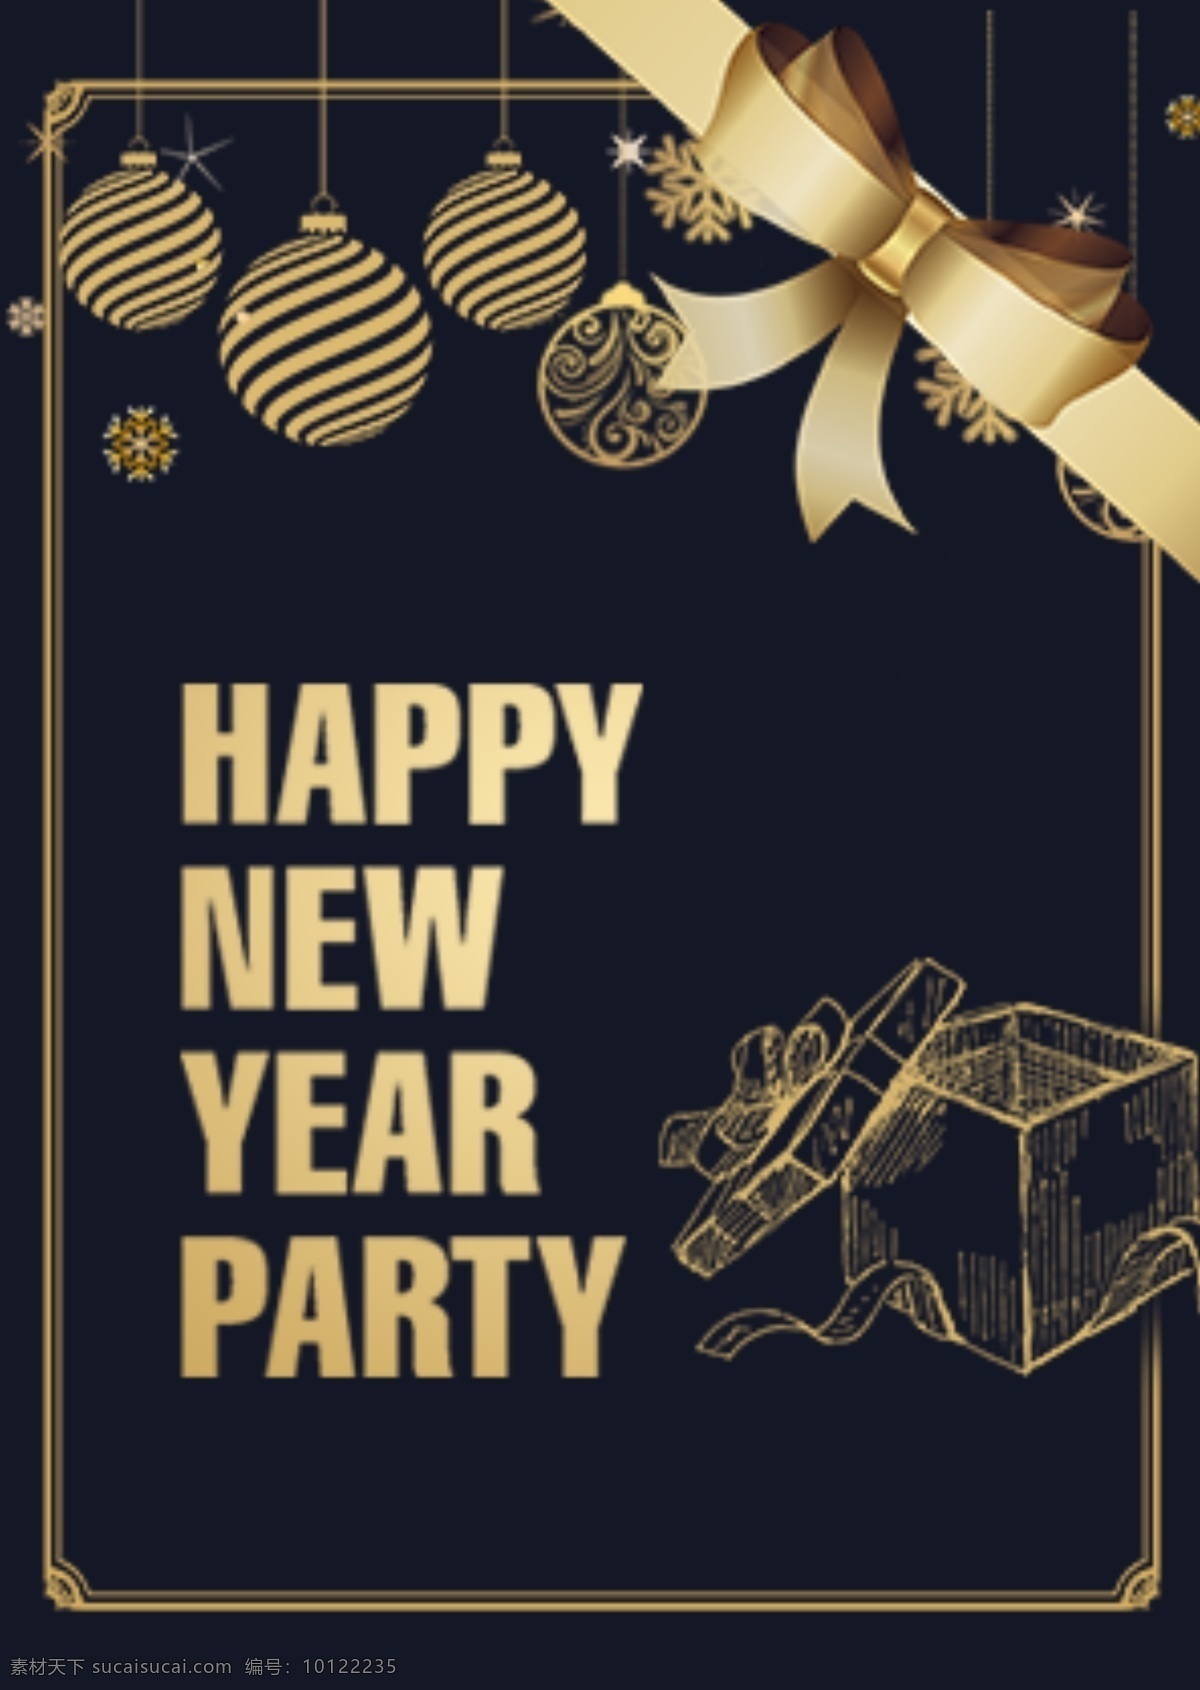 黑暗 简单 商务 风格 新年 晚会 海报 商业 手绘 深色 礼物盒 弓 金色的装饰 金边 雪花